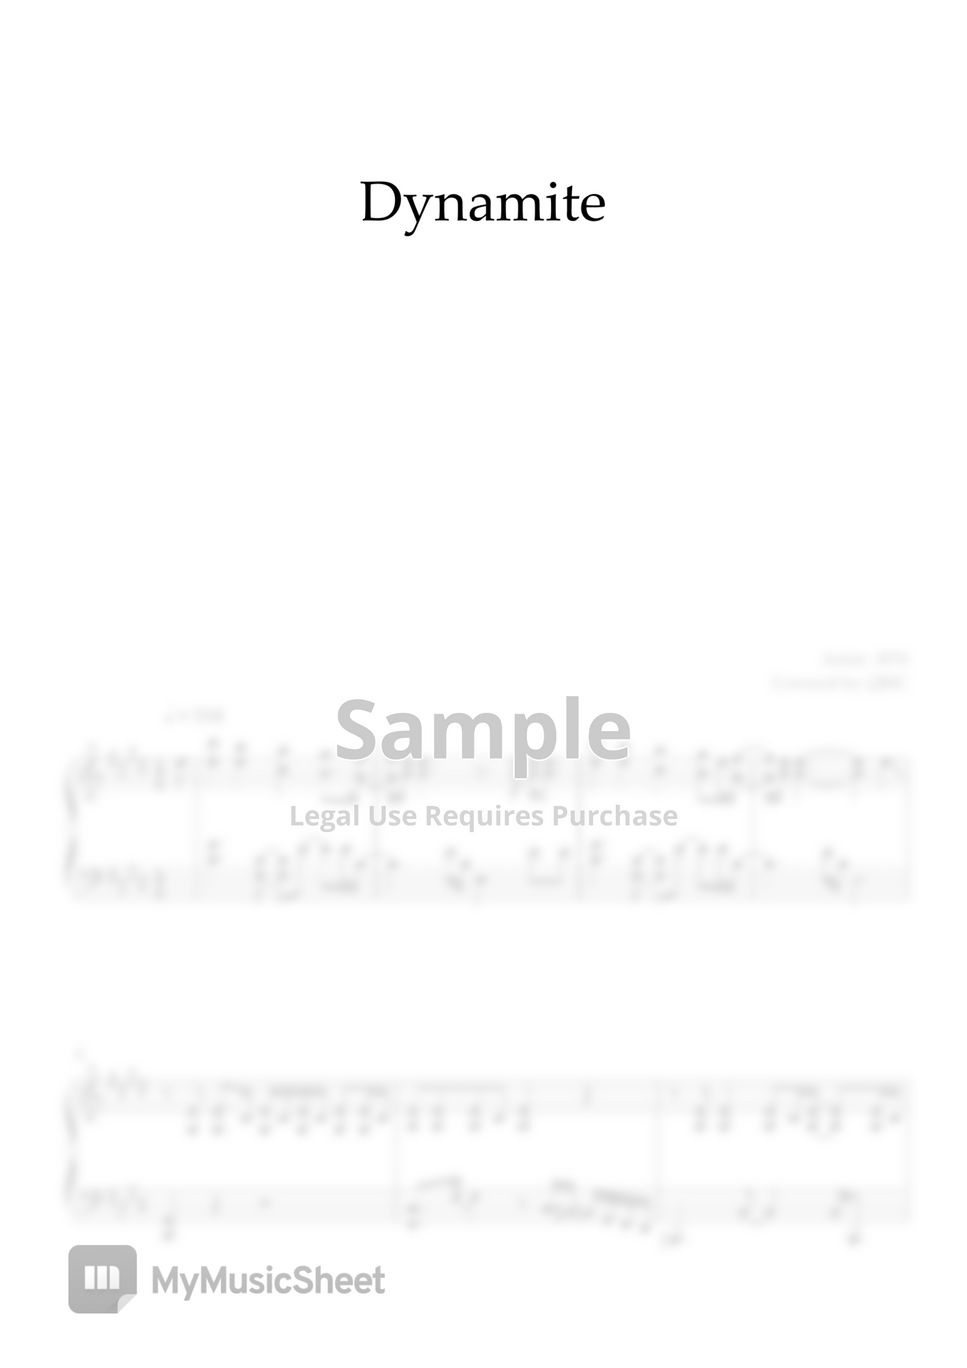 BTS - Dynamite by QBIC